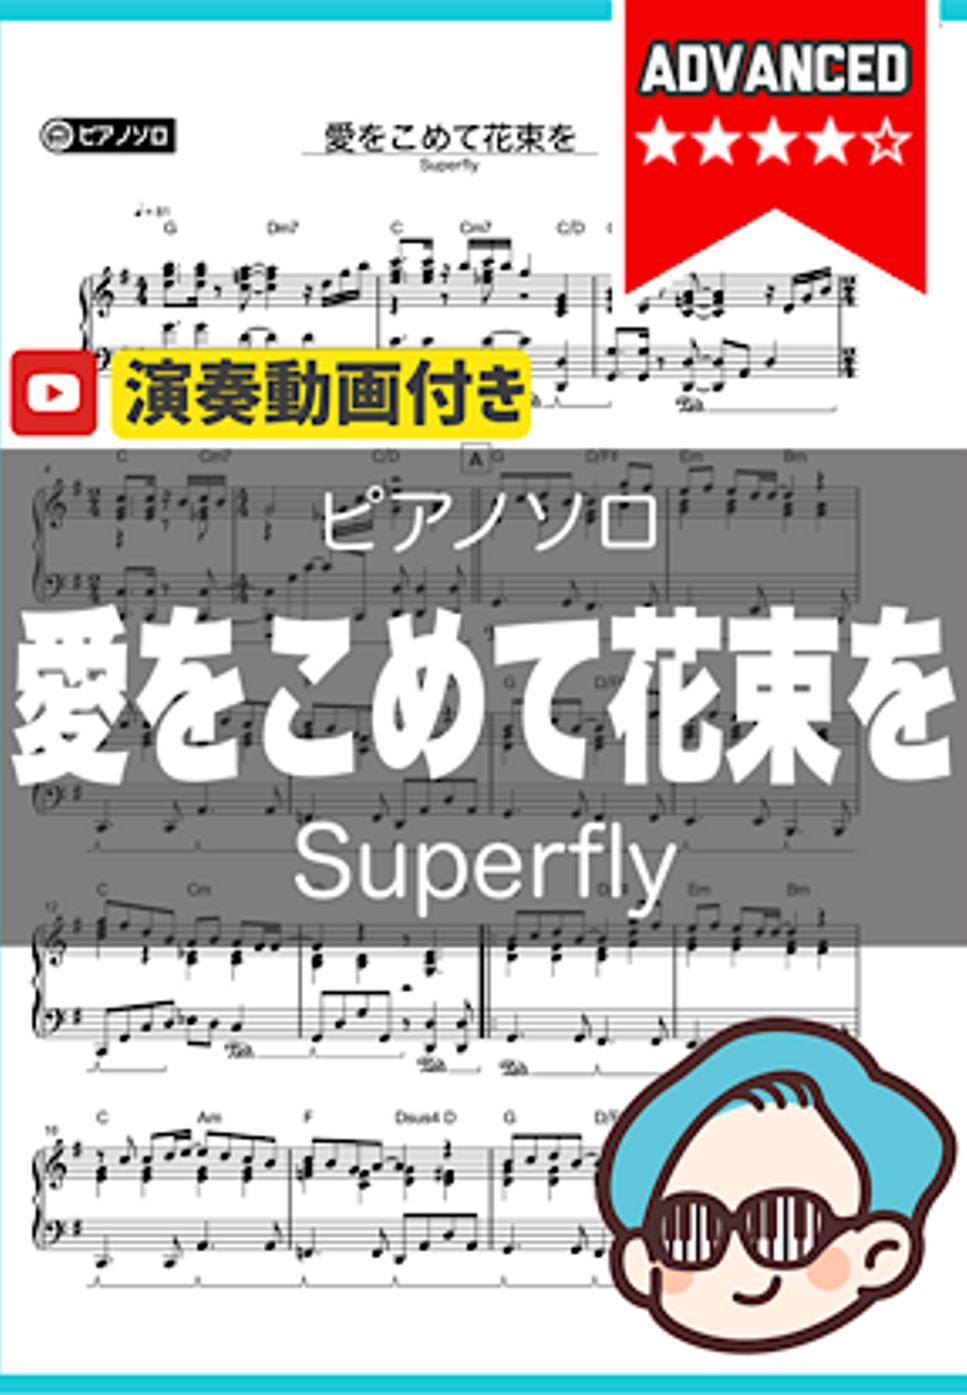 Superfly - 愛をこめて花束を by シータピアノ